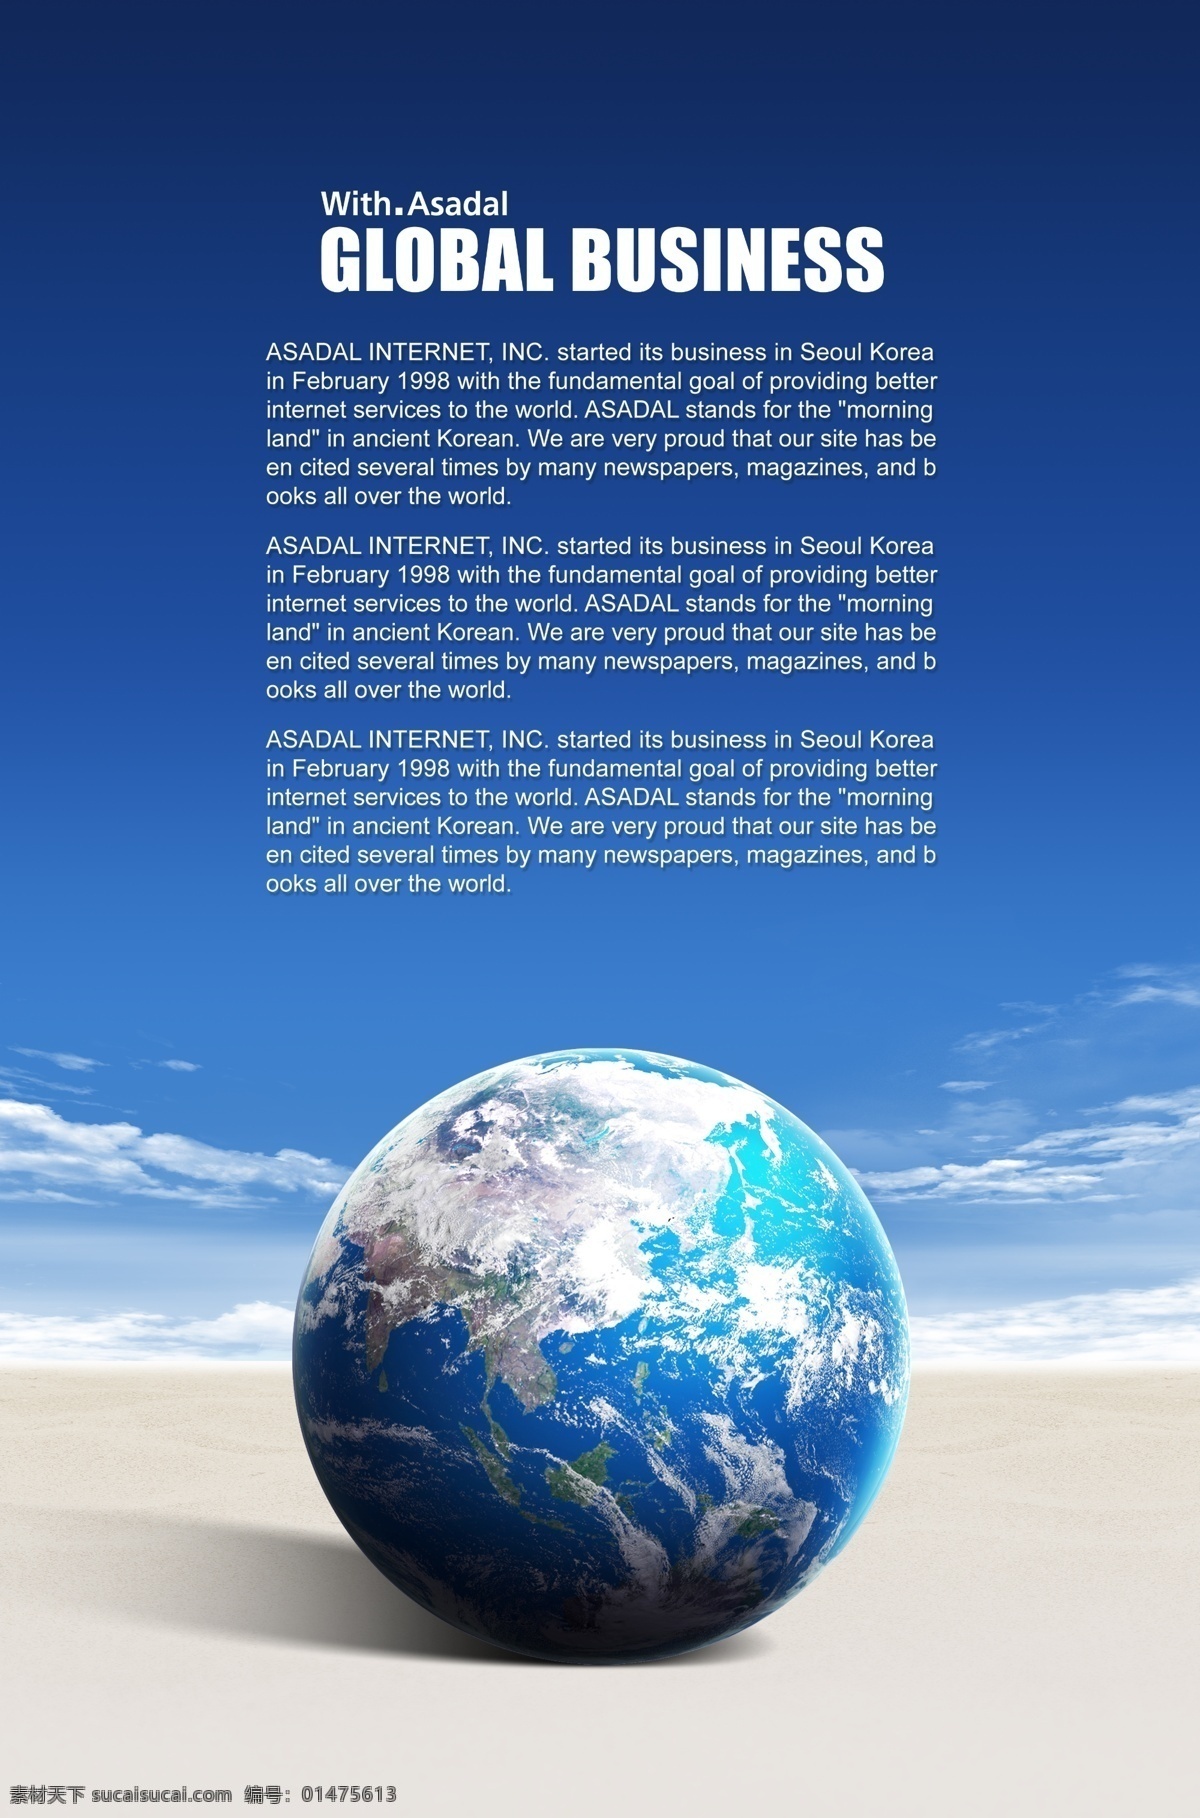 蓝色地球 地球世界 地球商务 科技 地球 商务科技 世界 线 球 城市 广告设计模板 psd素材 蓝色